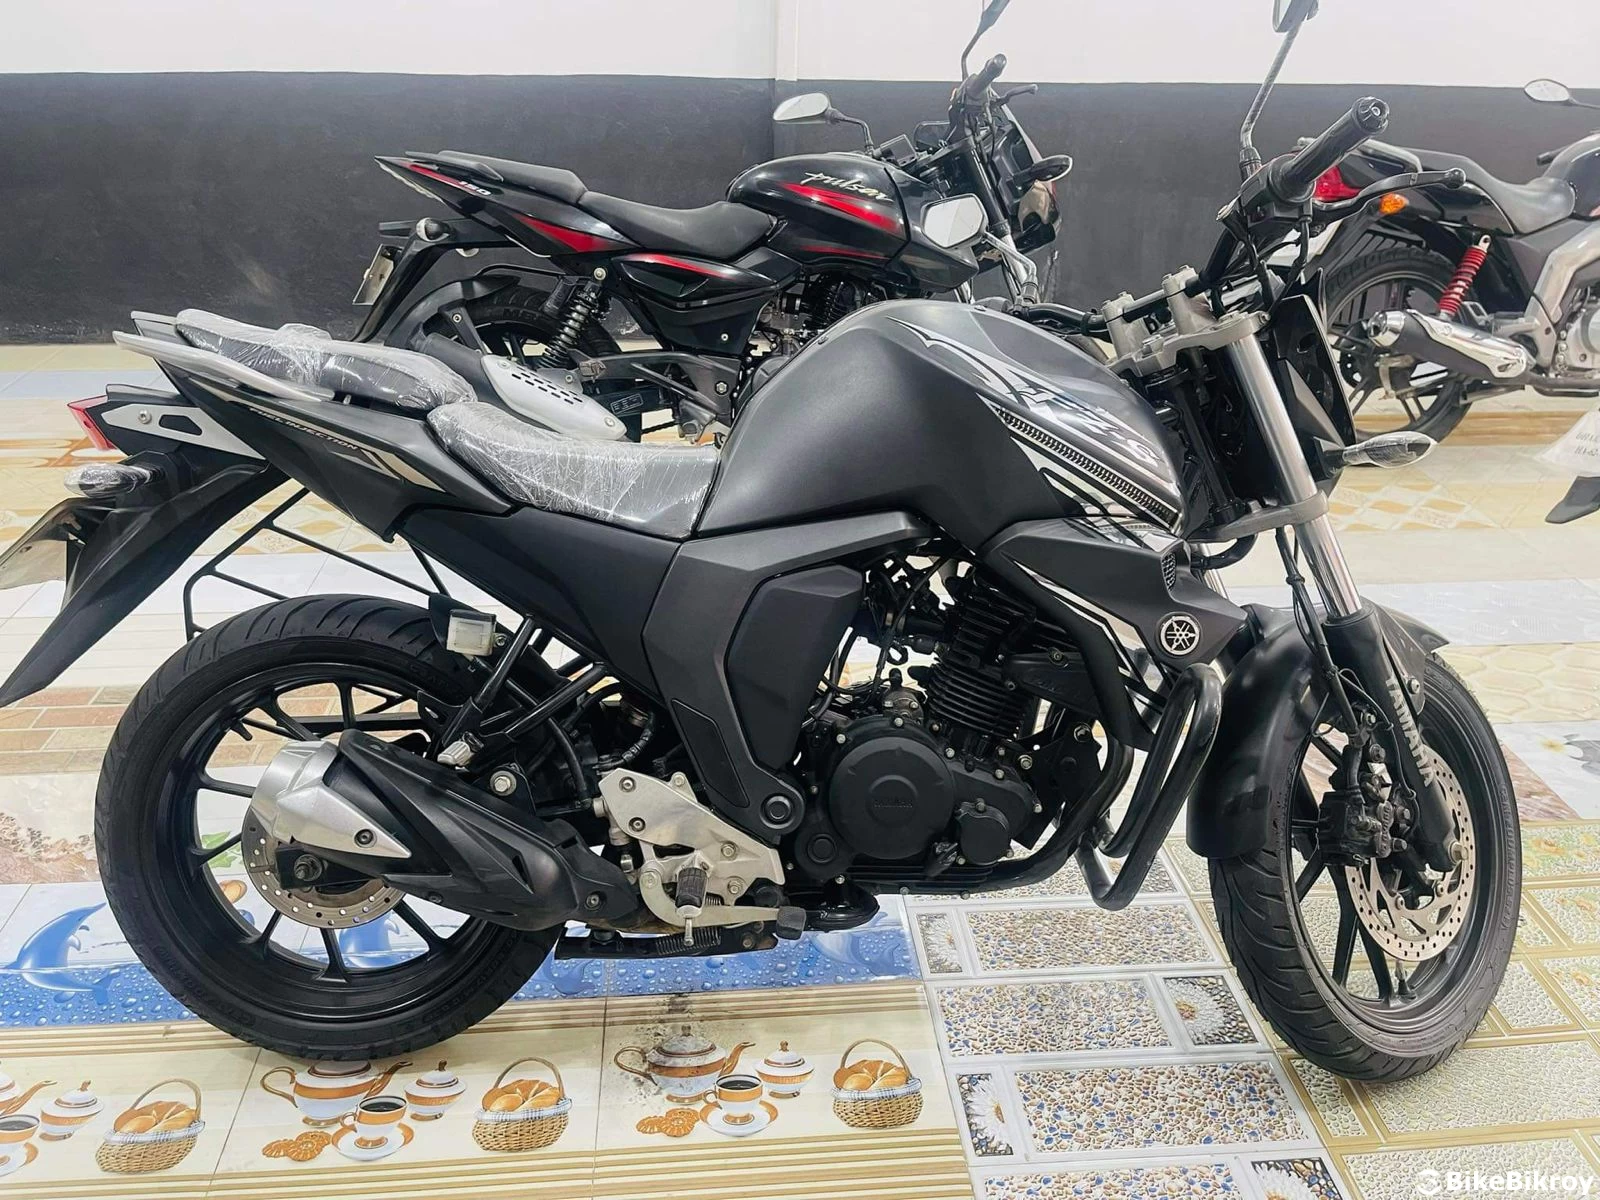 Yamaha FZ V2 (Black) Sale in Savar